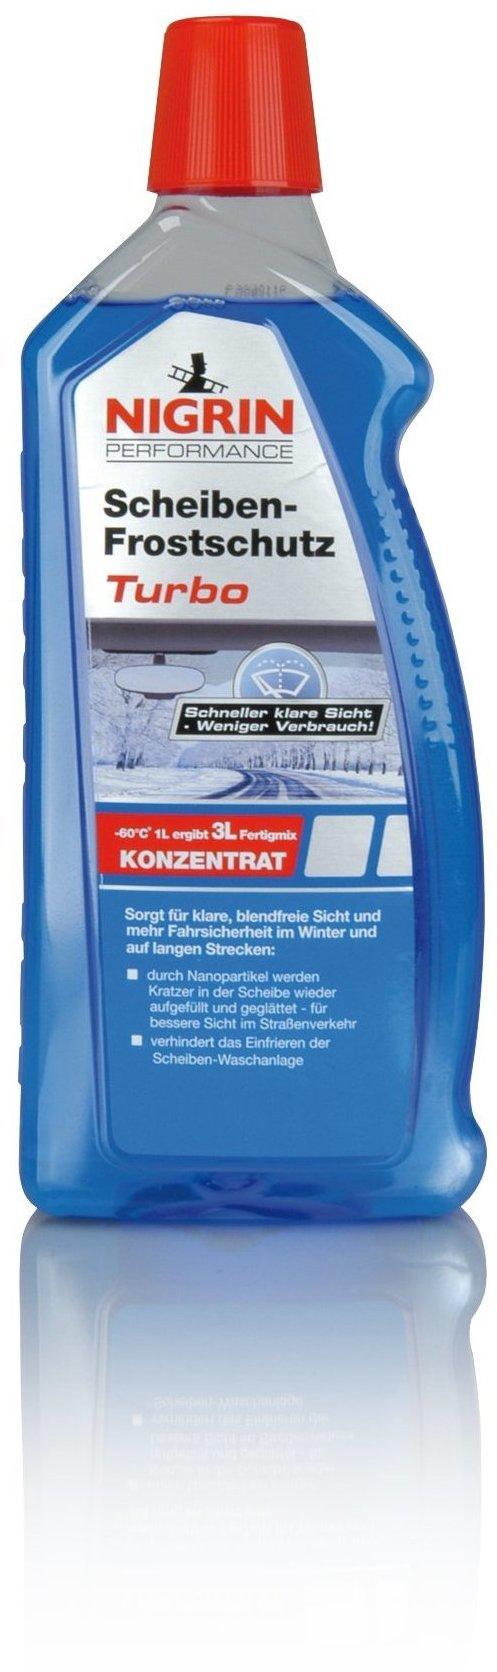 Nigrin Performance 73330P Scheiben-Frostschutz Turbo - 1 Liter, 6,95 €